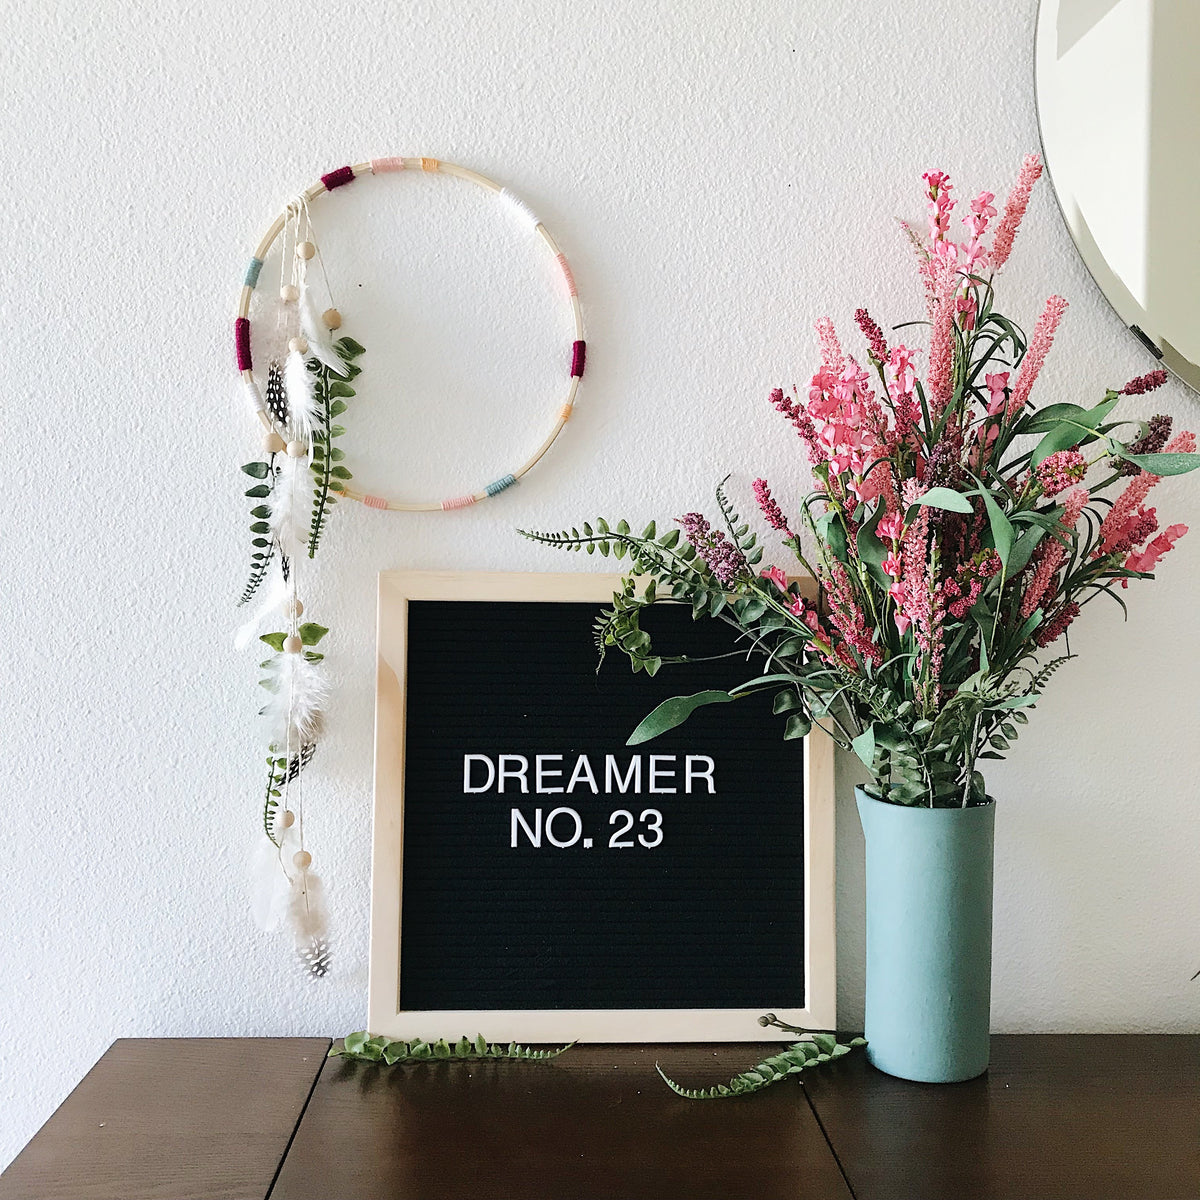 Dreamer No. 23 | 100 Days of Dreamers